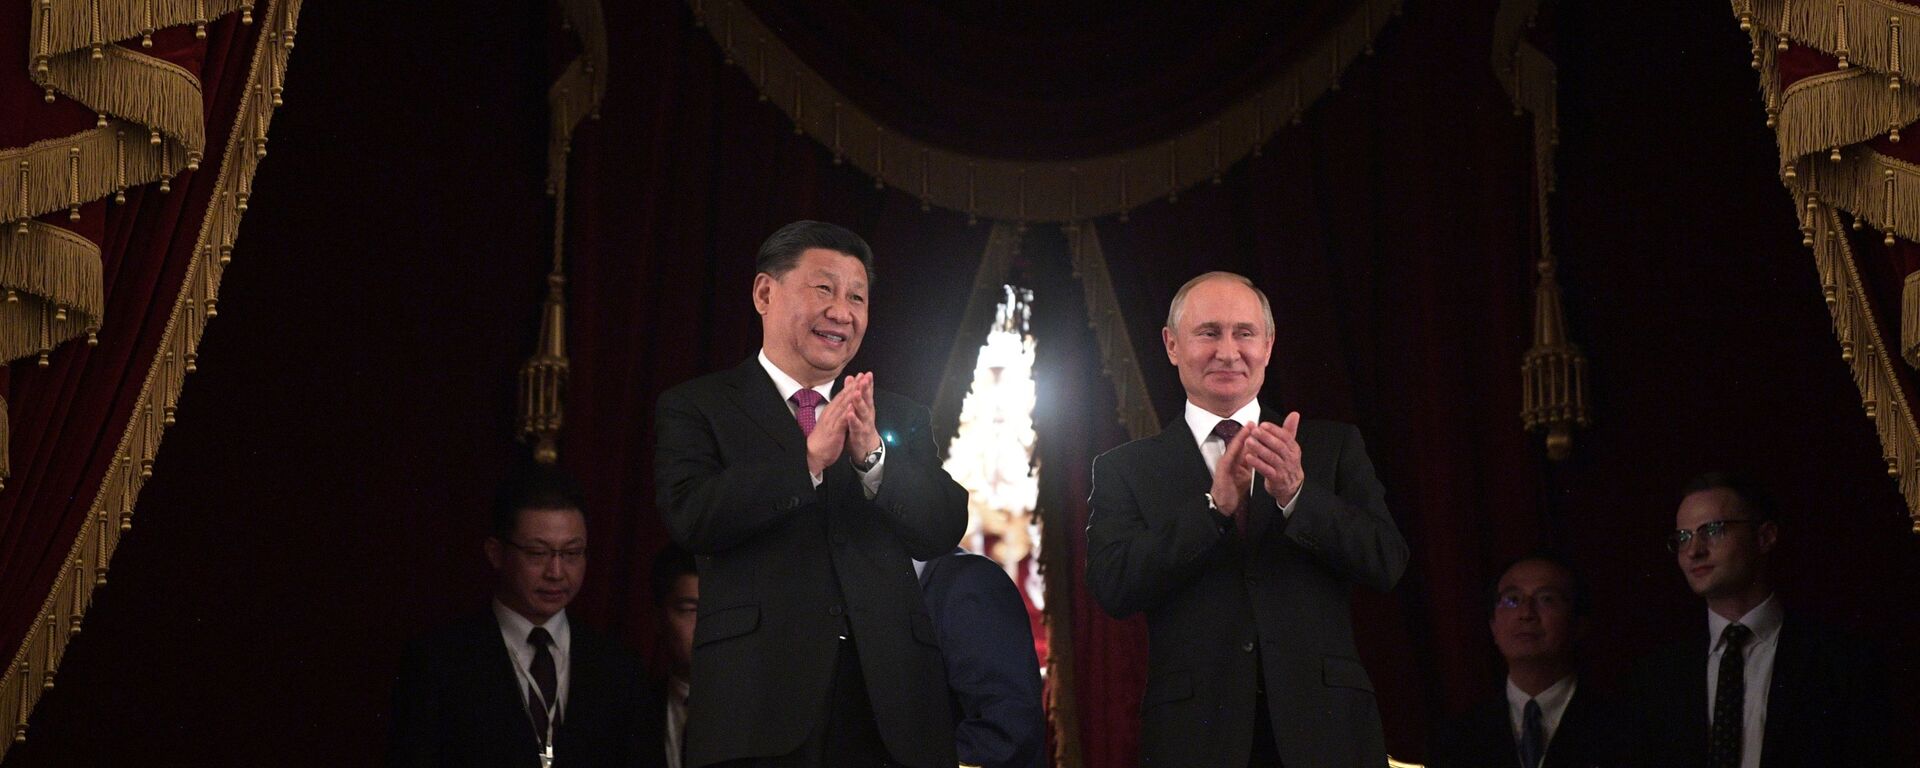 Председник Кине Си Ђинпинг и председник Русије Владимир Путин  - Sputnik Србија, 1920, 29.04.2021